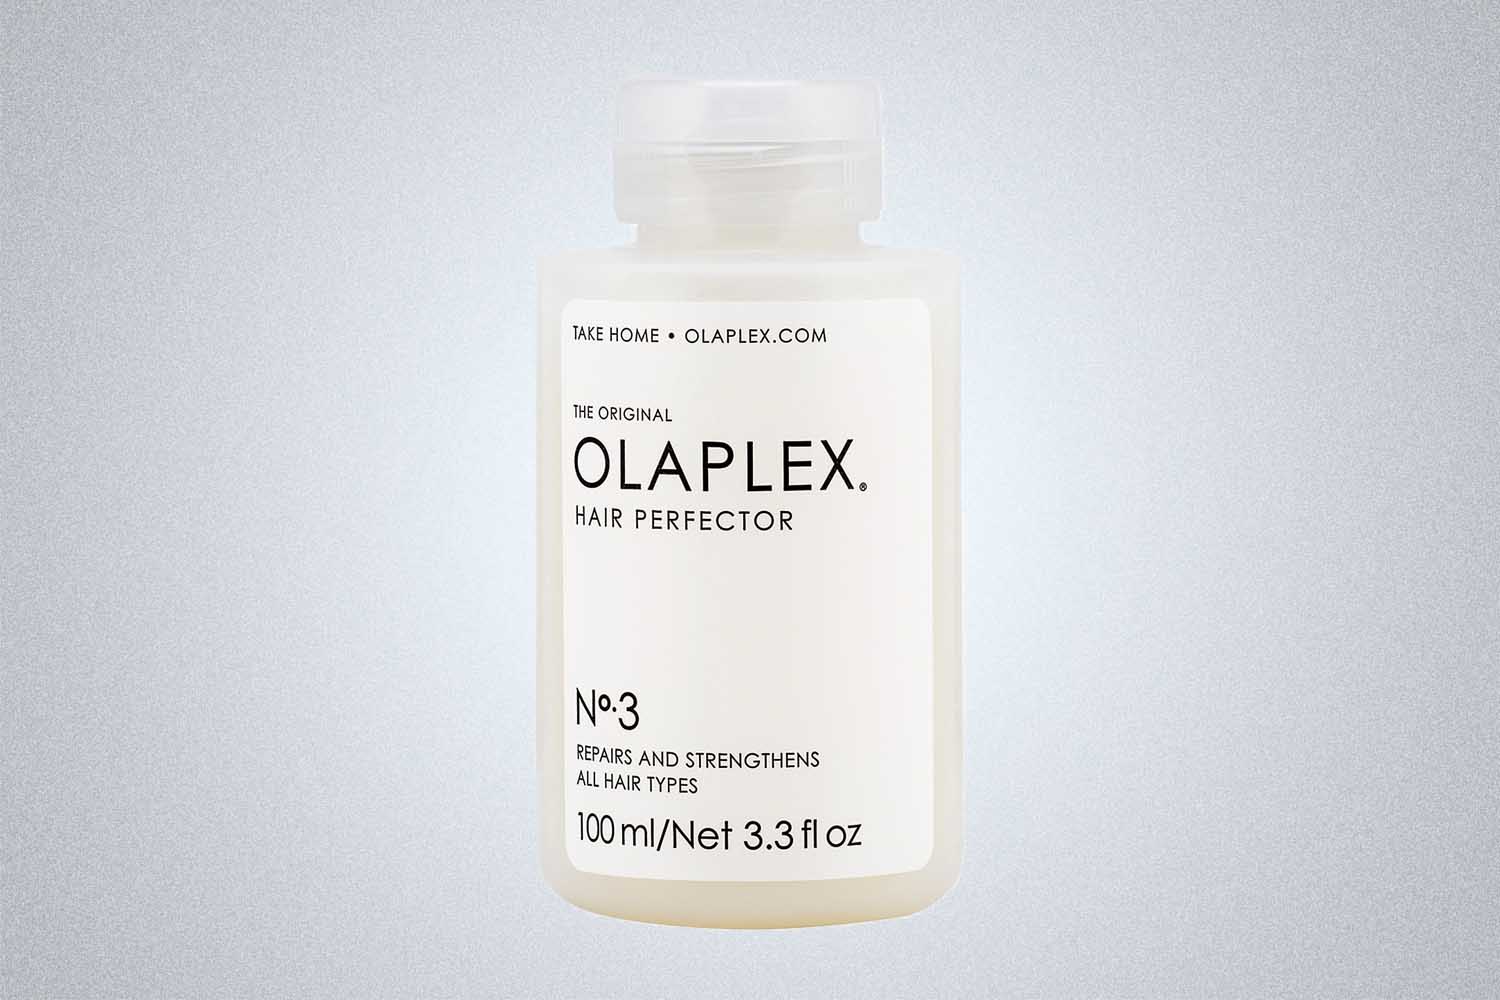 Olaplex No.3 Hair Perfector Treatment, now on sale